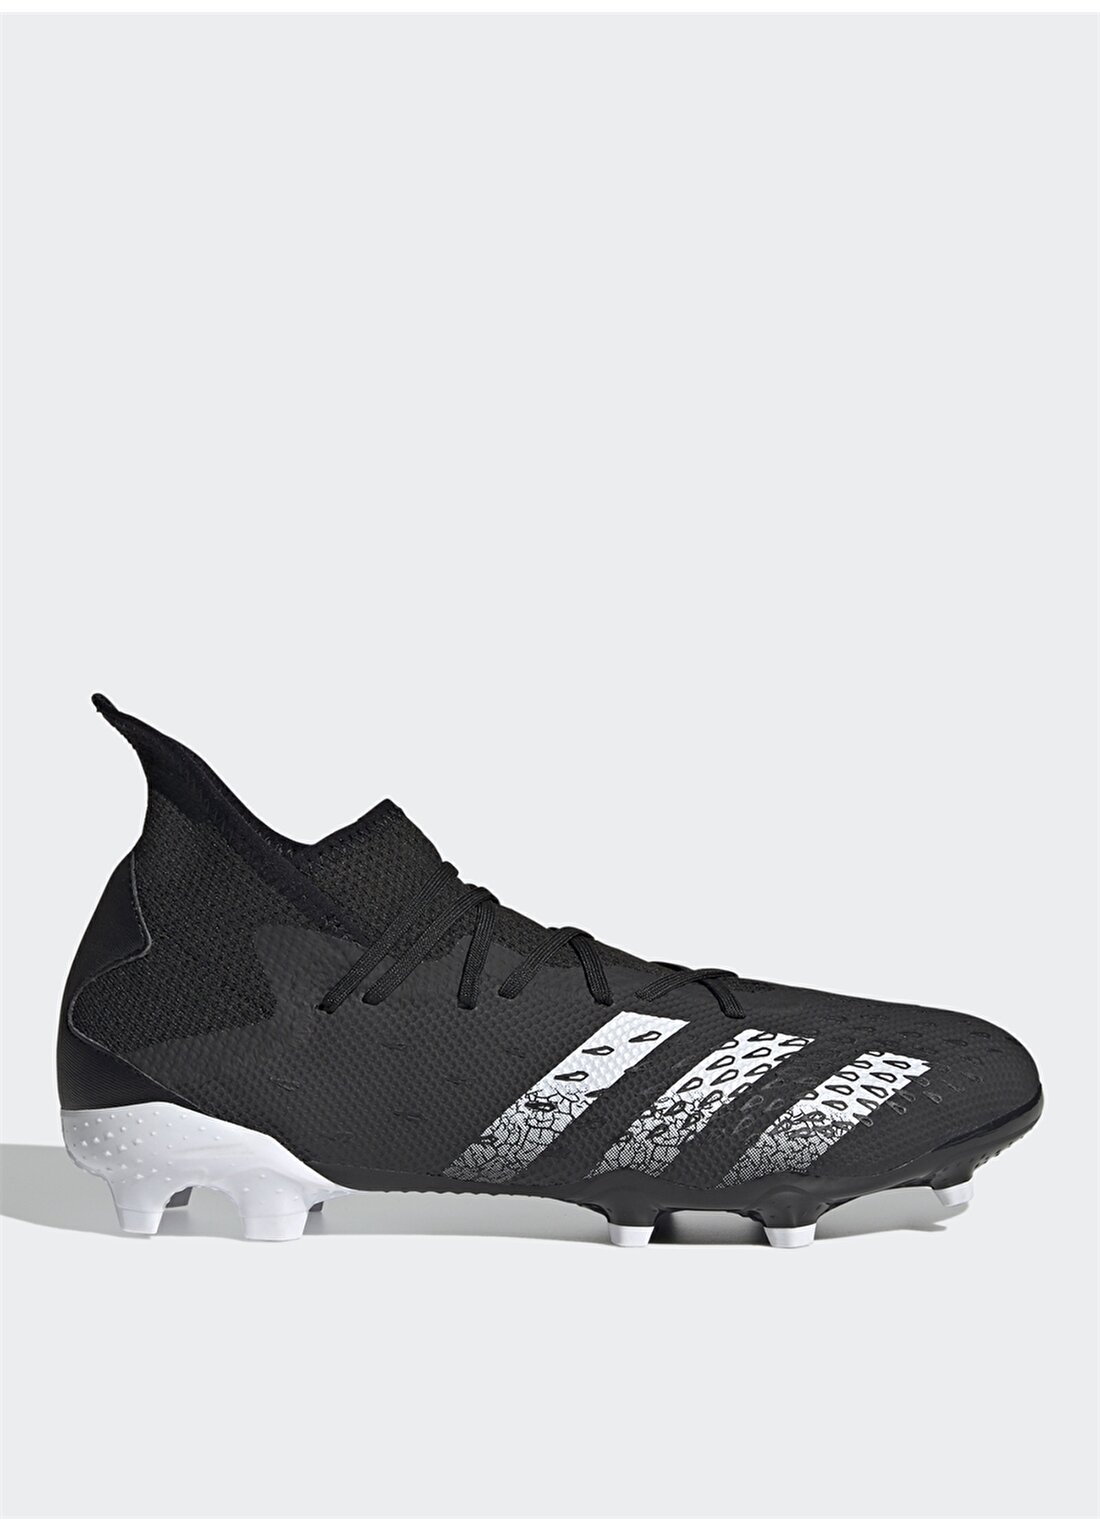 Adidas FY1030 PREDATOR FREAK .3 FG Erkek Futbol Ayakkabısı